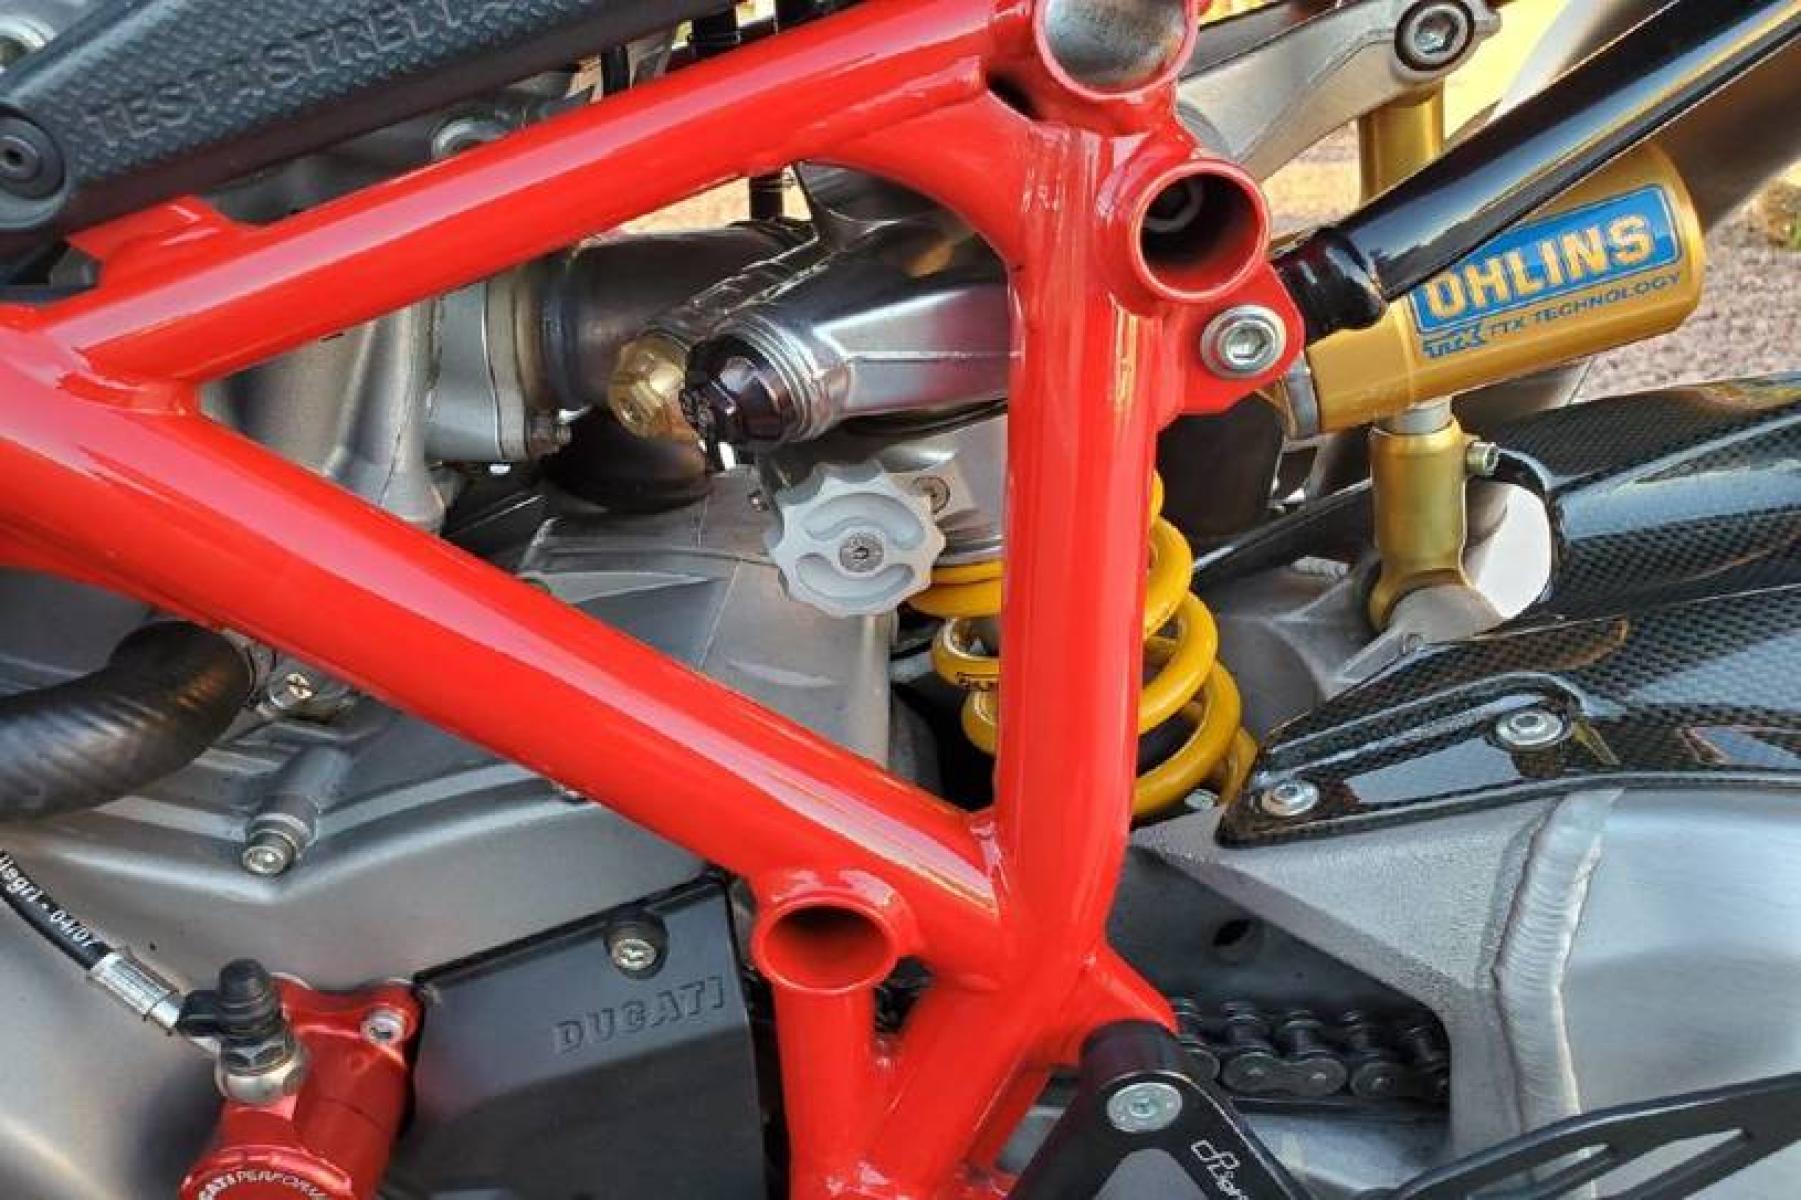 2008 Ducati 1099 S S (ZDM1XBEW18B) with an 1,098 cc L twin engine, Six-Speed Dry Clutch transmission, located at 3160 South Valley View Blvd, Las Vegas, NV, 89146, (888) 750-6845, 36.132458, -115.190247 - b64:VGhlIER1Y2F0aSAxMDk4UyBib2FzdHMgc29tZSBnb3JnZW91cyBib2R5d29yayBhbmQgc2xpY2sgZGVzaWduIGN1ZXMsIGJ1dCBpdHMgcmVhbCBtYXN0ZXJwaWVjZSBsaWVzIGJlbmVhdGggdGhvc2UgcHJldHR5IHBsYXN0aWMgcGFuZWxzLiBVbmRlcm5lYXRoIGlzIGEgdHVidWxhciBzdGVlbCB0cmVsbGlzIGZyYW1lIG9wdGltaXplZCBmb3Igc3RpZmZuZXNzLCBhbmQgYW4gTC10d2luIGVu - Photo #9